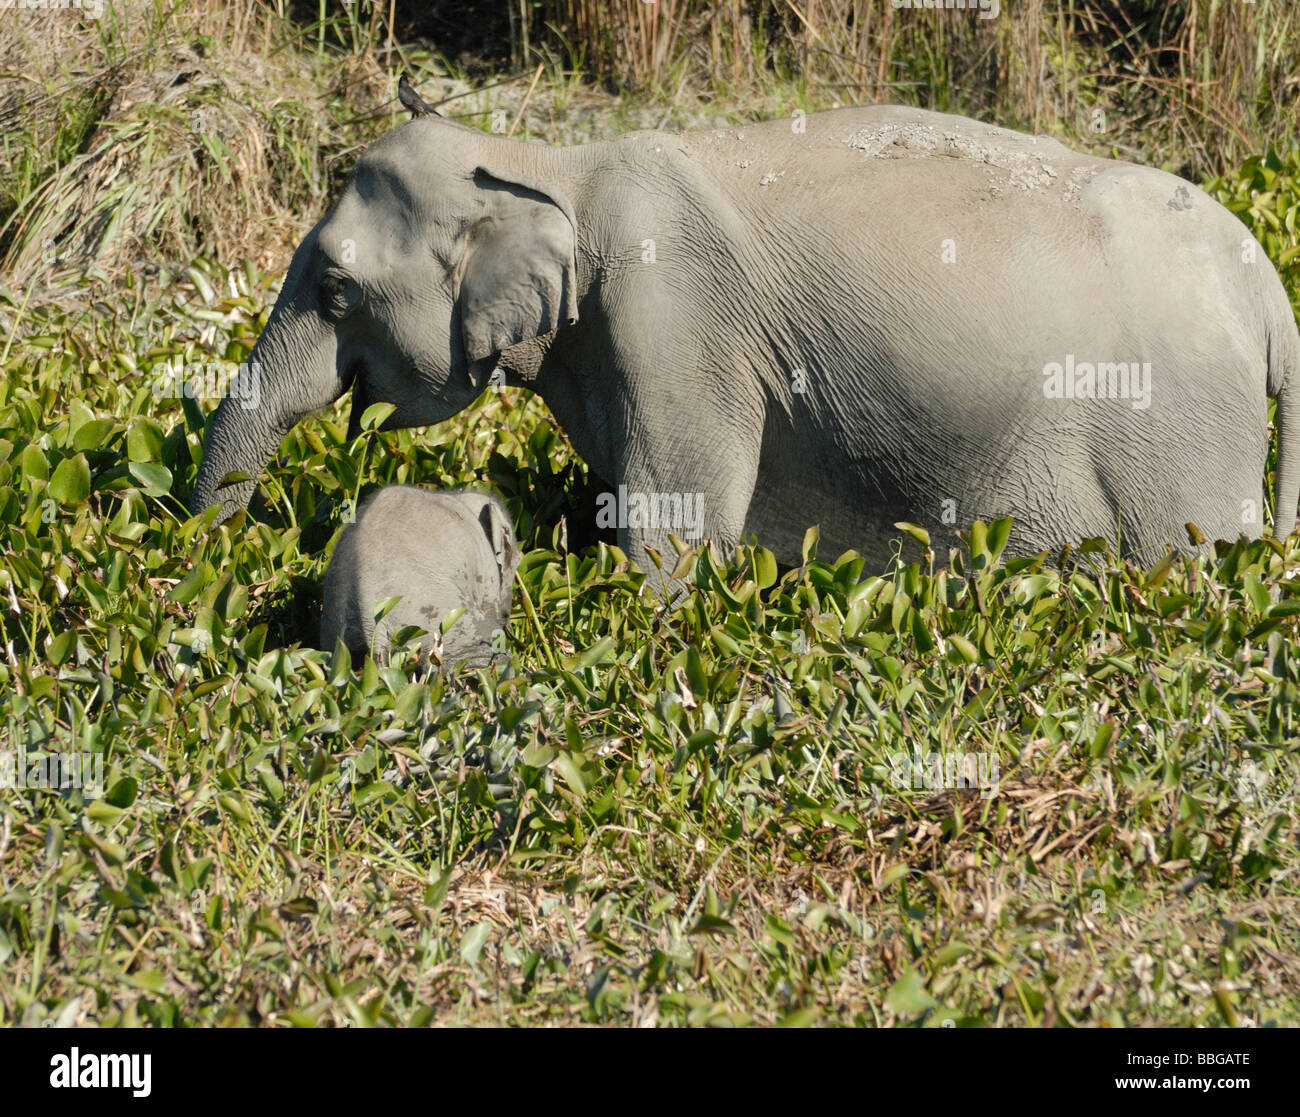 Les Indiens sauvages femelle éléphant (Elephas maximus indicus) avec un bébé de manger des plantes de l'eau sur les bords d'un lac. Banque D'Images